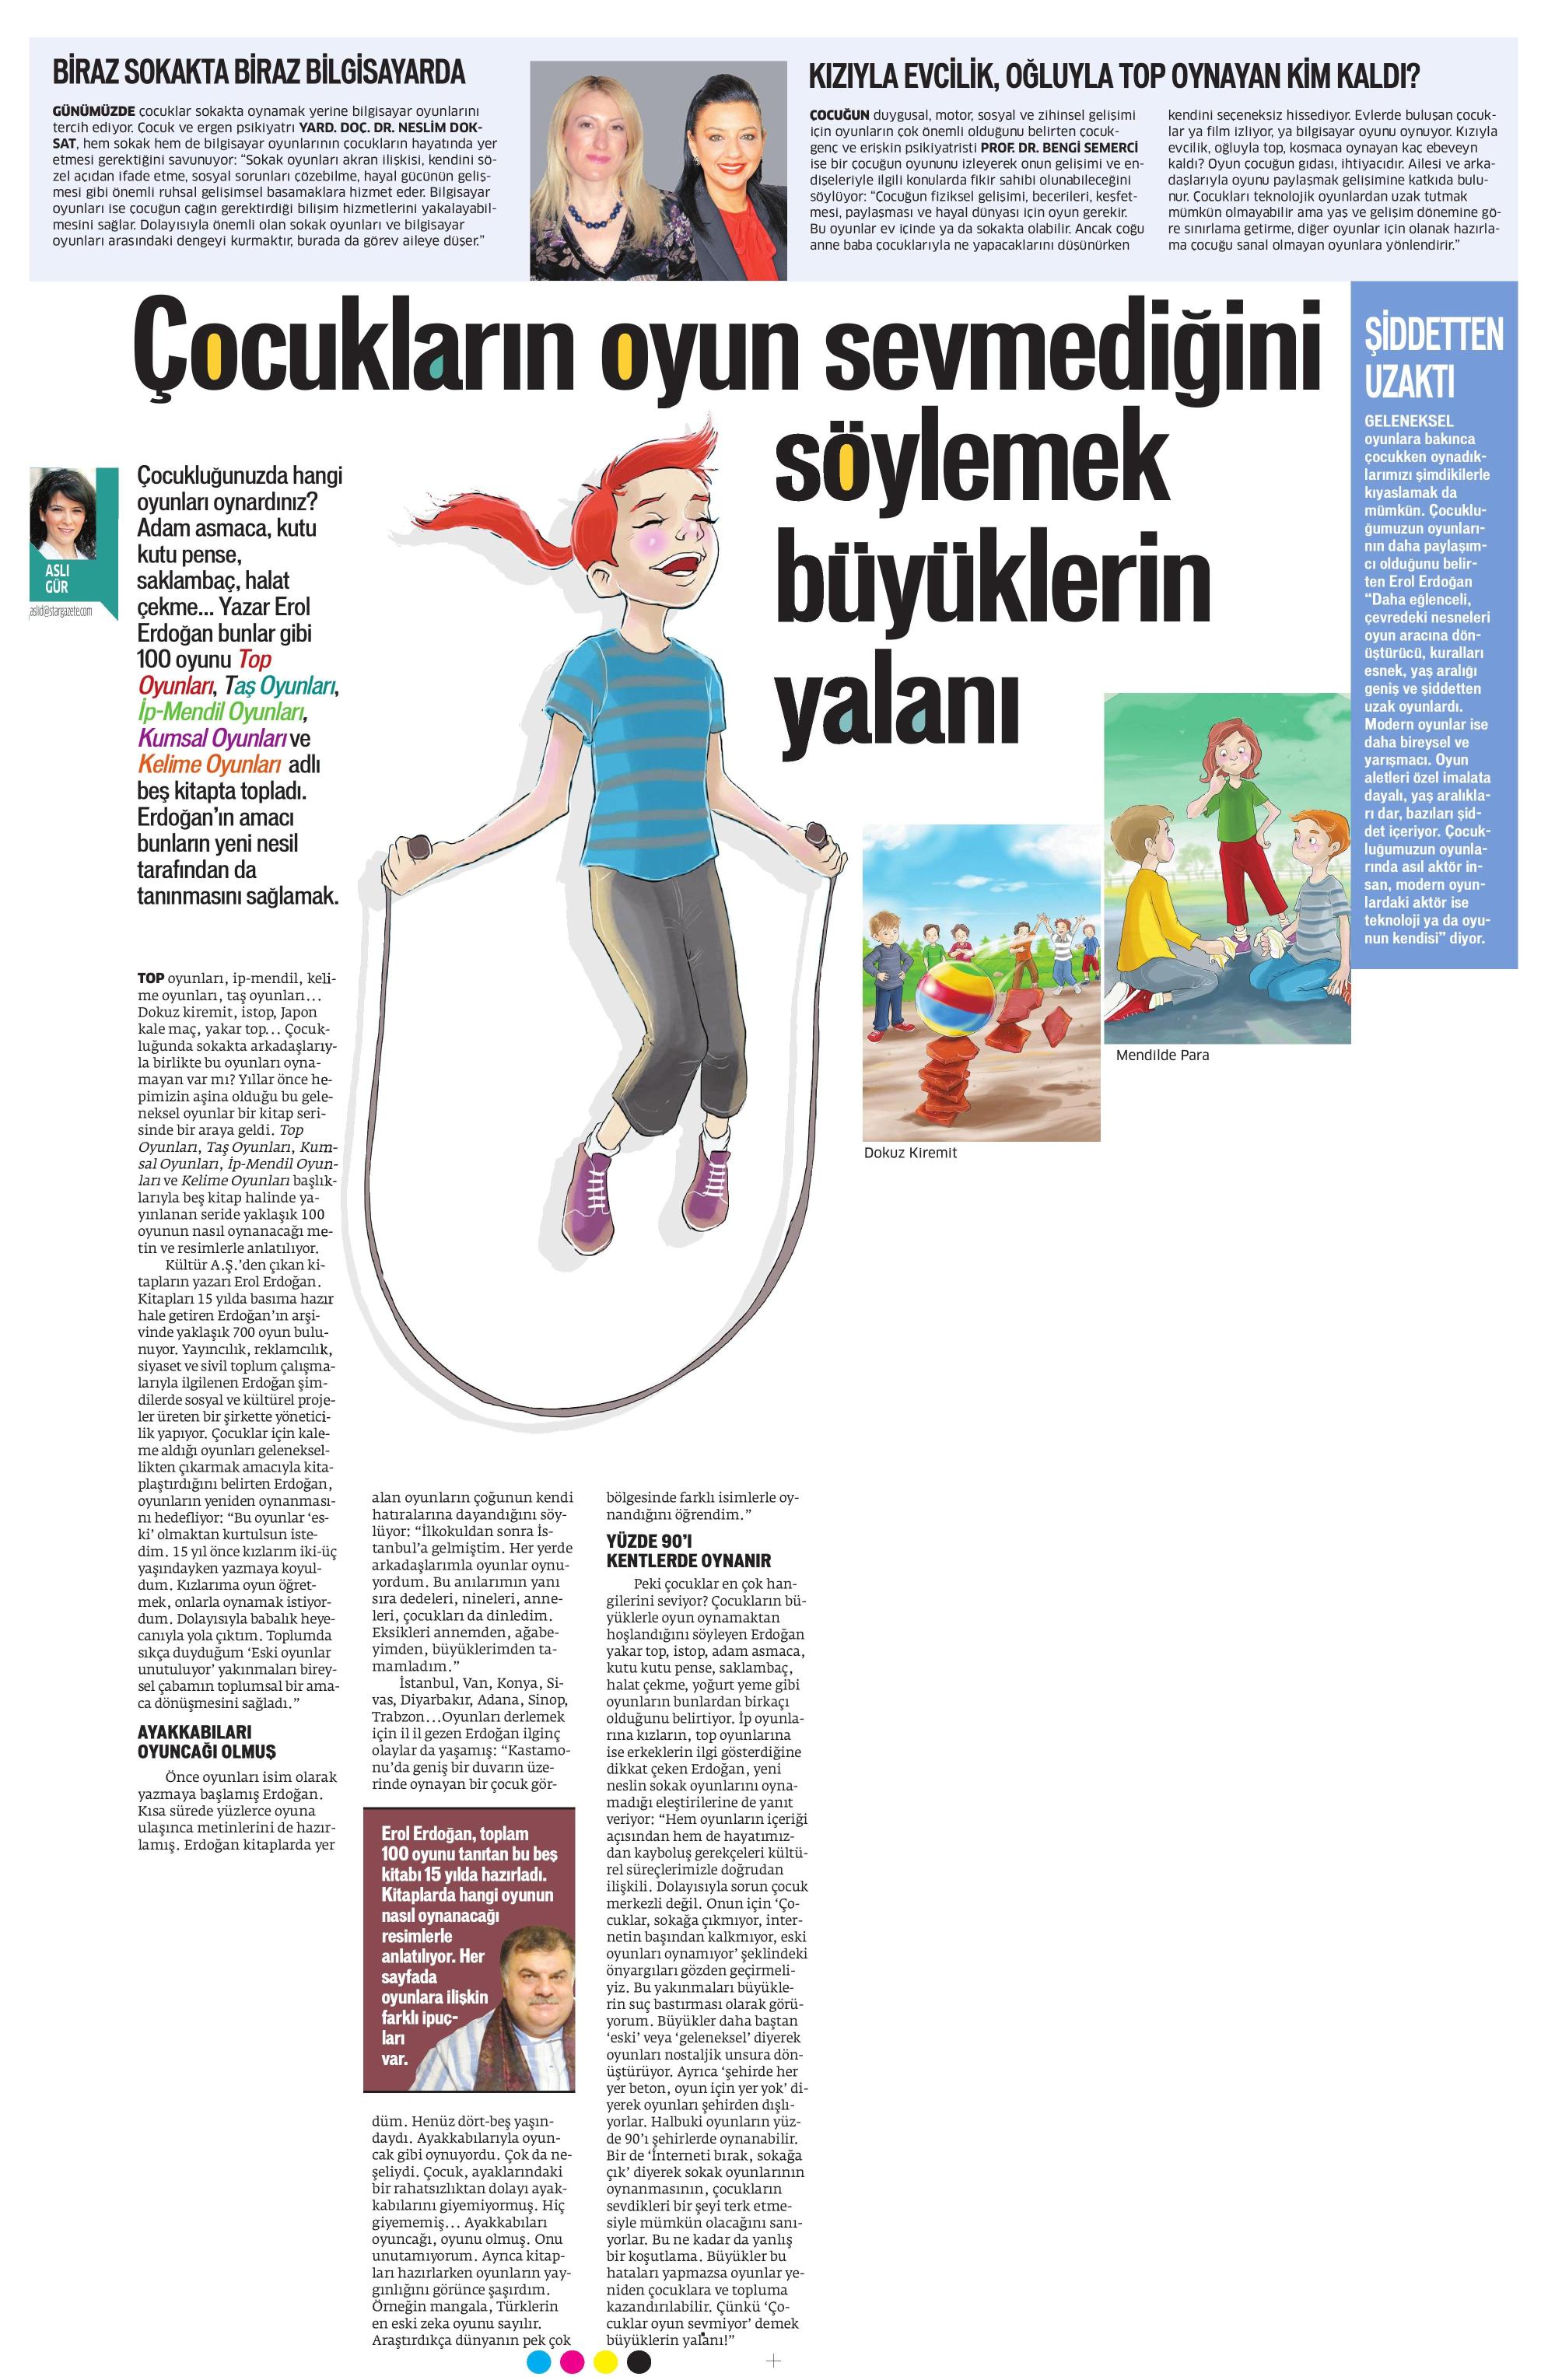 Çocukların oyun sevmediğini söylemek büyüklerin yalanı - STAR CUMARTESİ 29.03.2014 